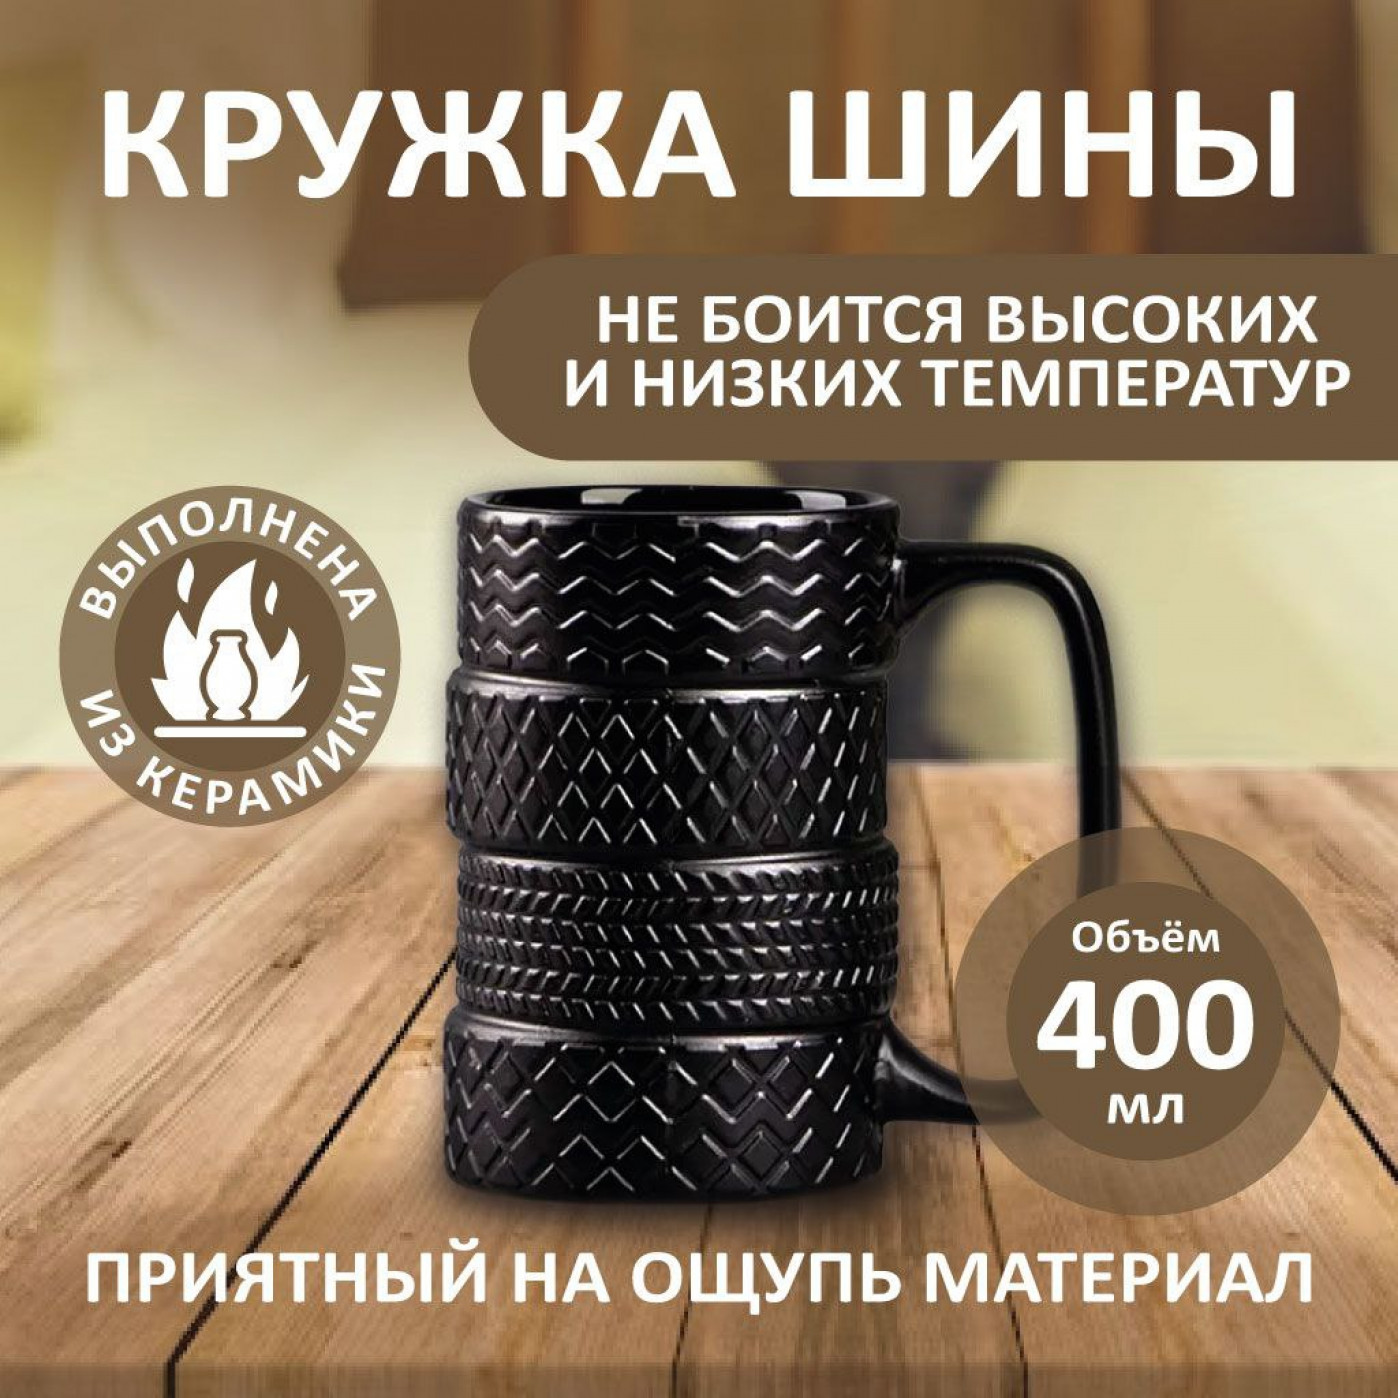 Купить чашки в подарок в интернет-магазине в Москве